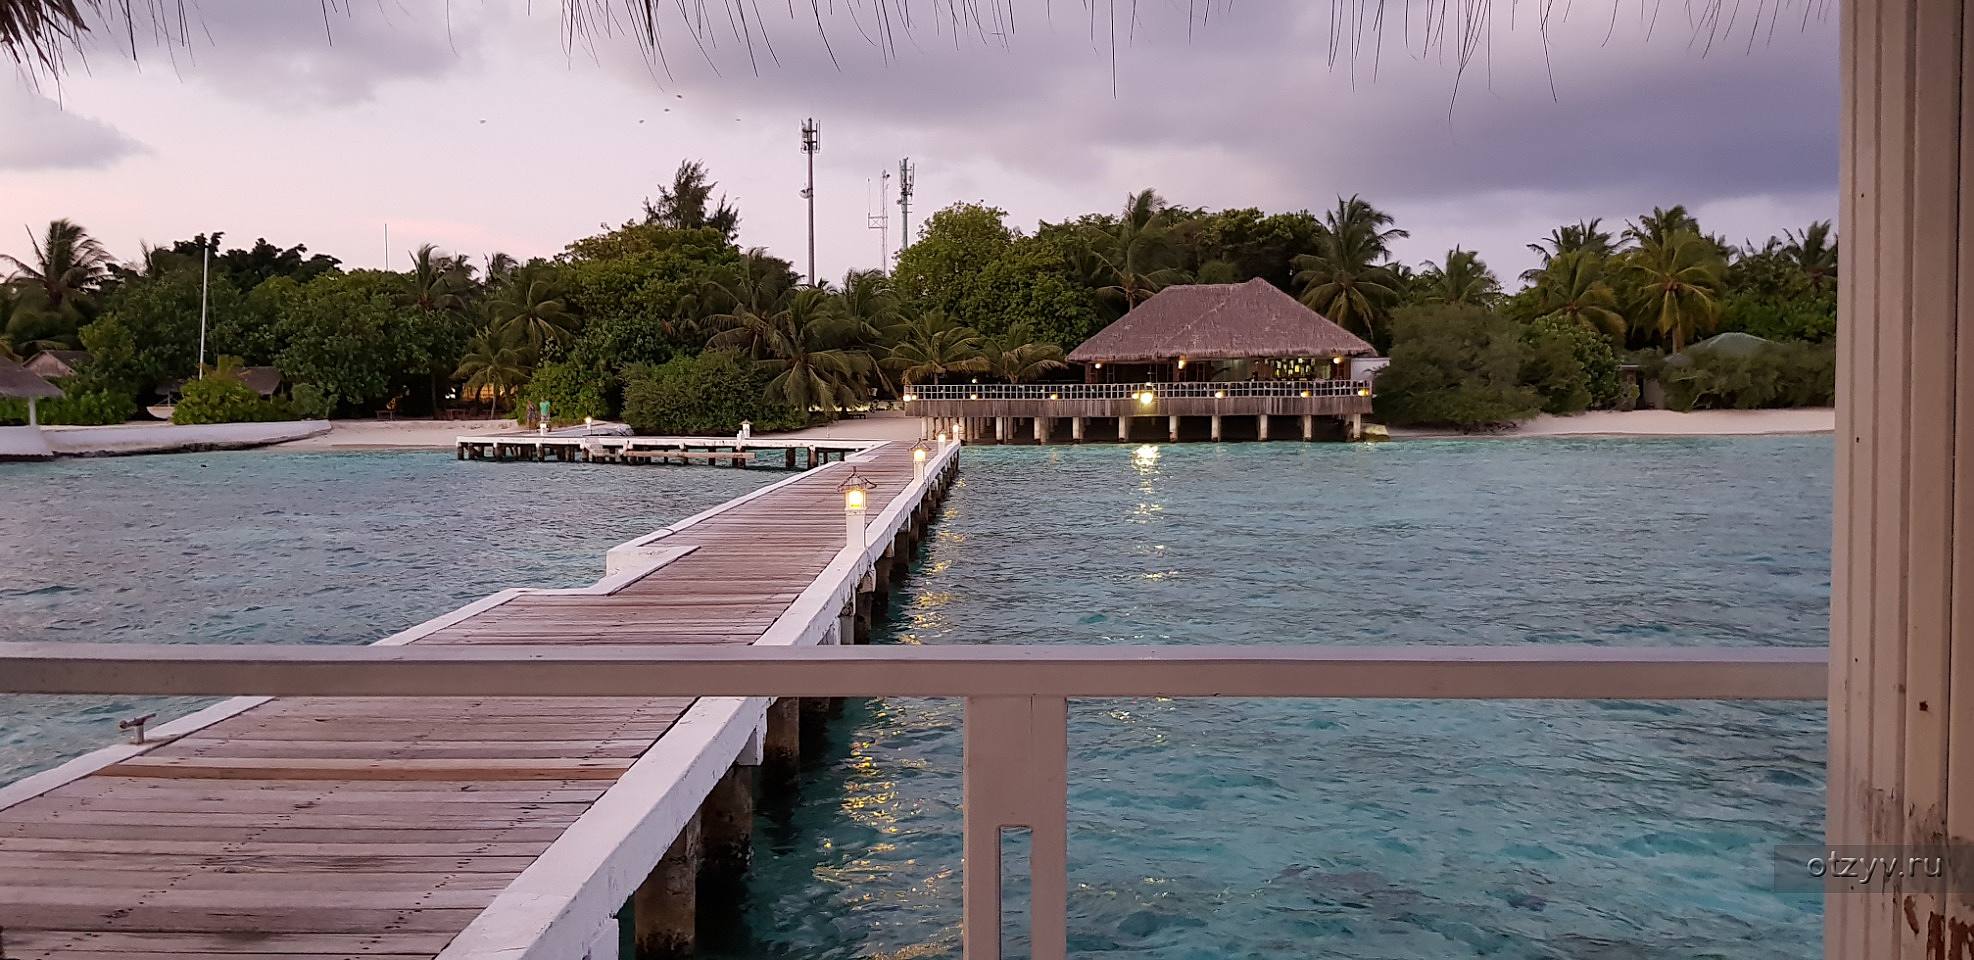 Eriyadu island resort 4. Eriyadu Island Resort. Мальдивы в сентябре. Eriyadu Island Resort 4 фото туристов. Eriyadu Island Resort 4*Канес прозрачным дном.